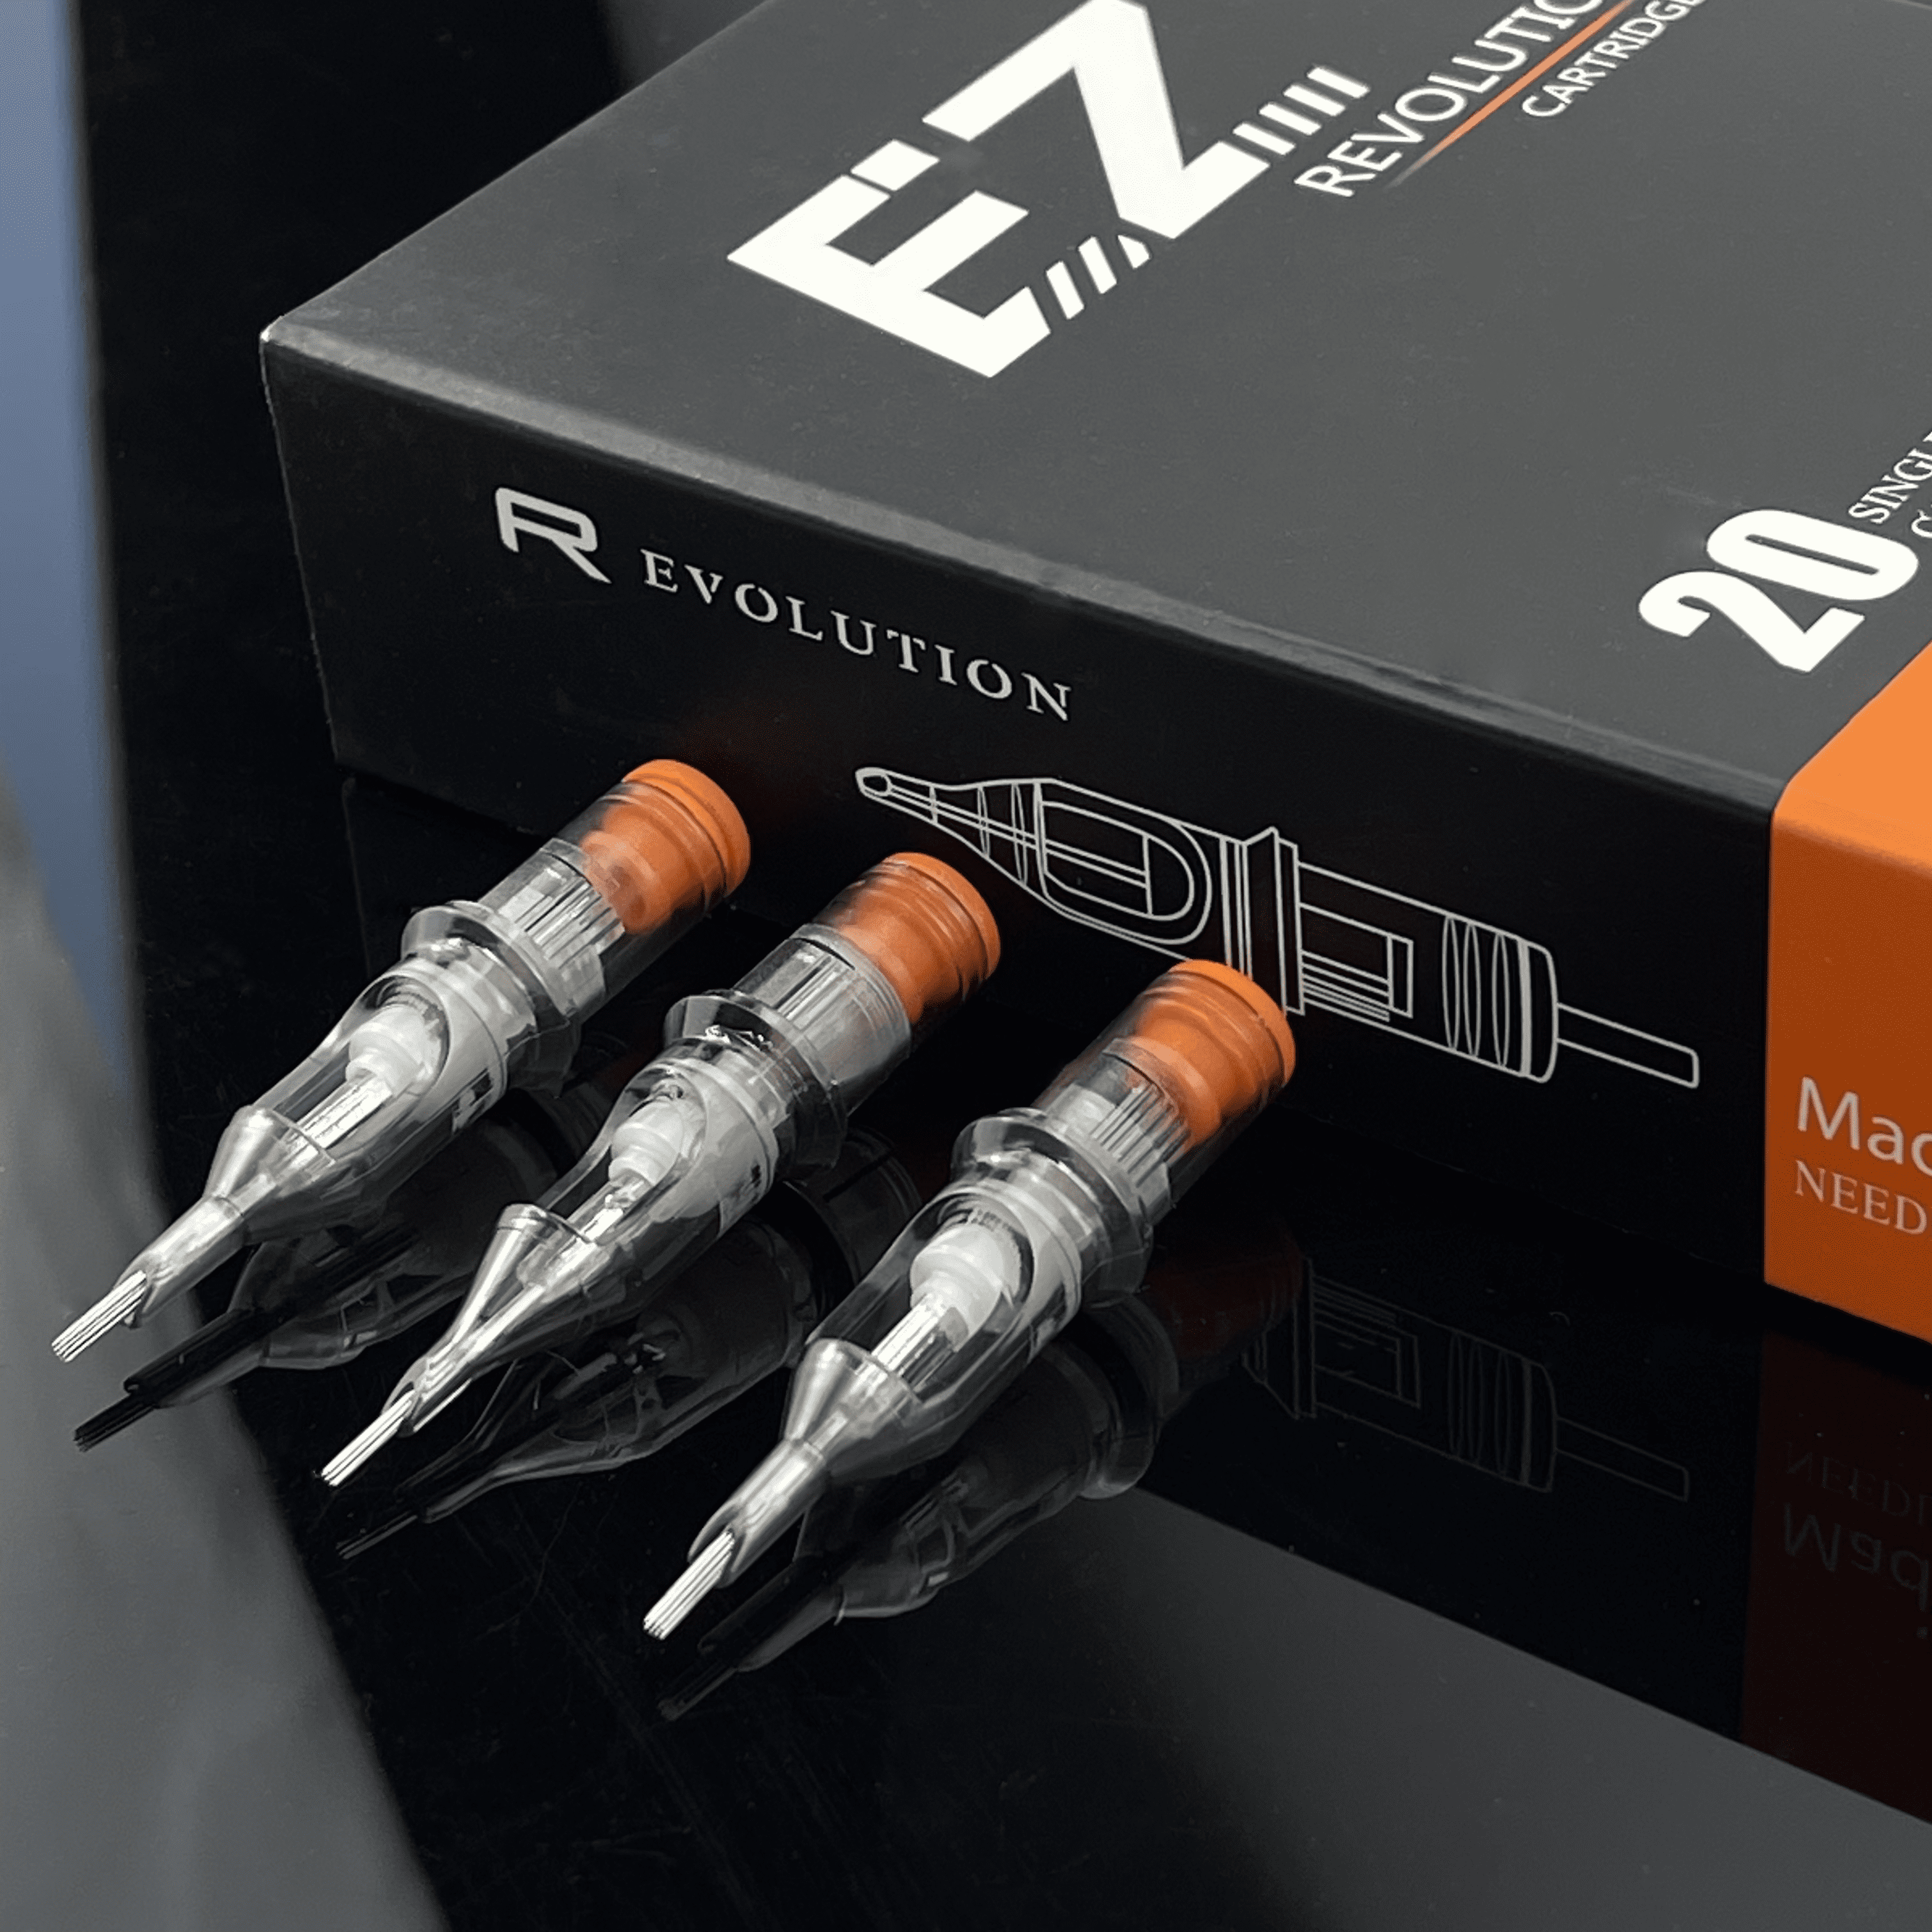 EZ tattoo Revolution cartridge needles Round Shader - EZTATTOO